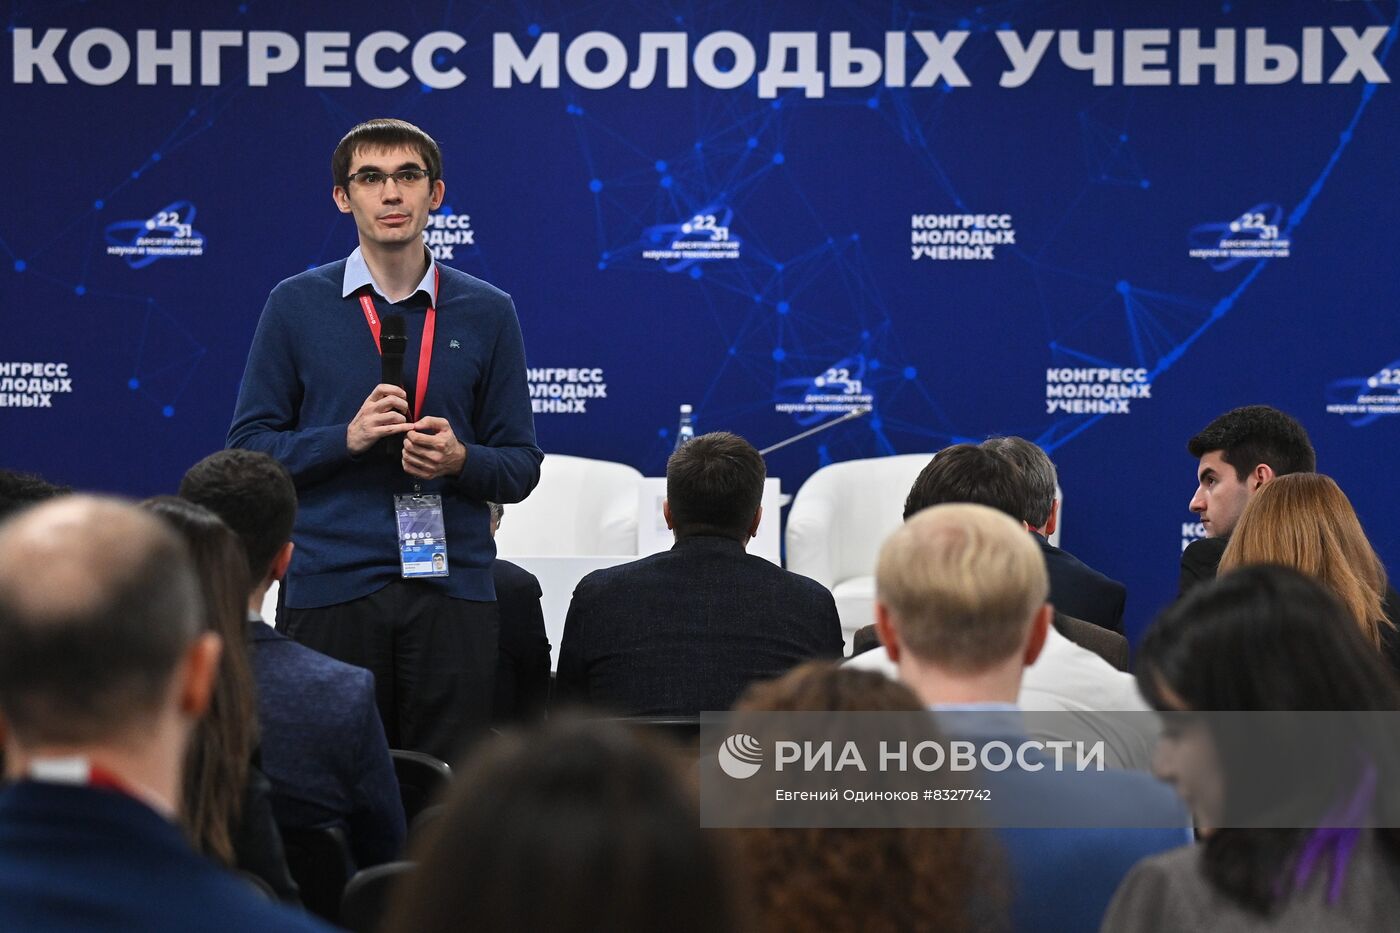 II КМУ-2022. Взаимодействие молодых ученых в СКФО